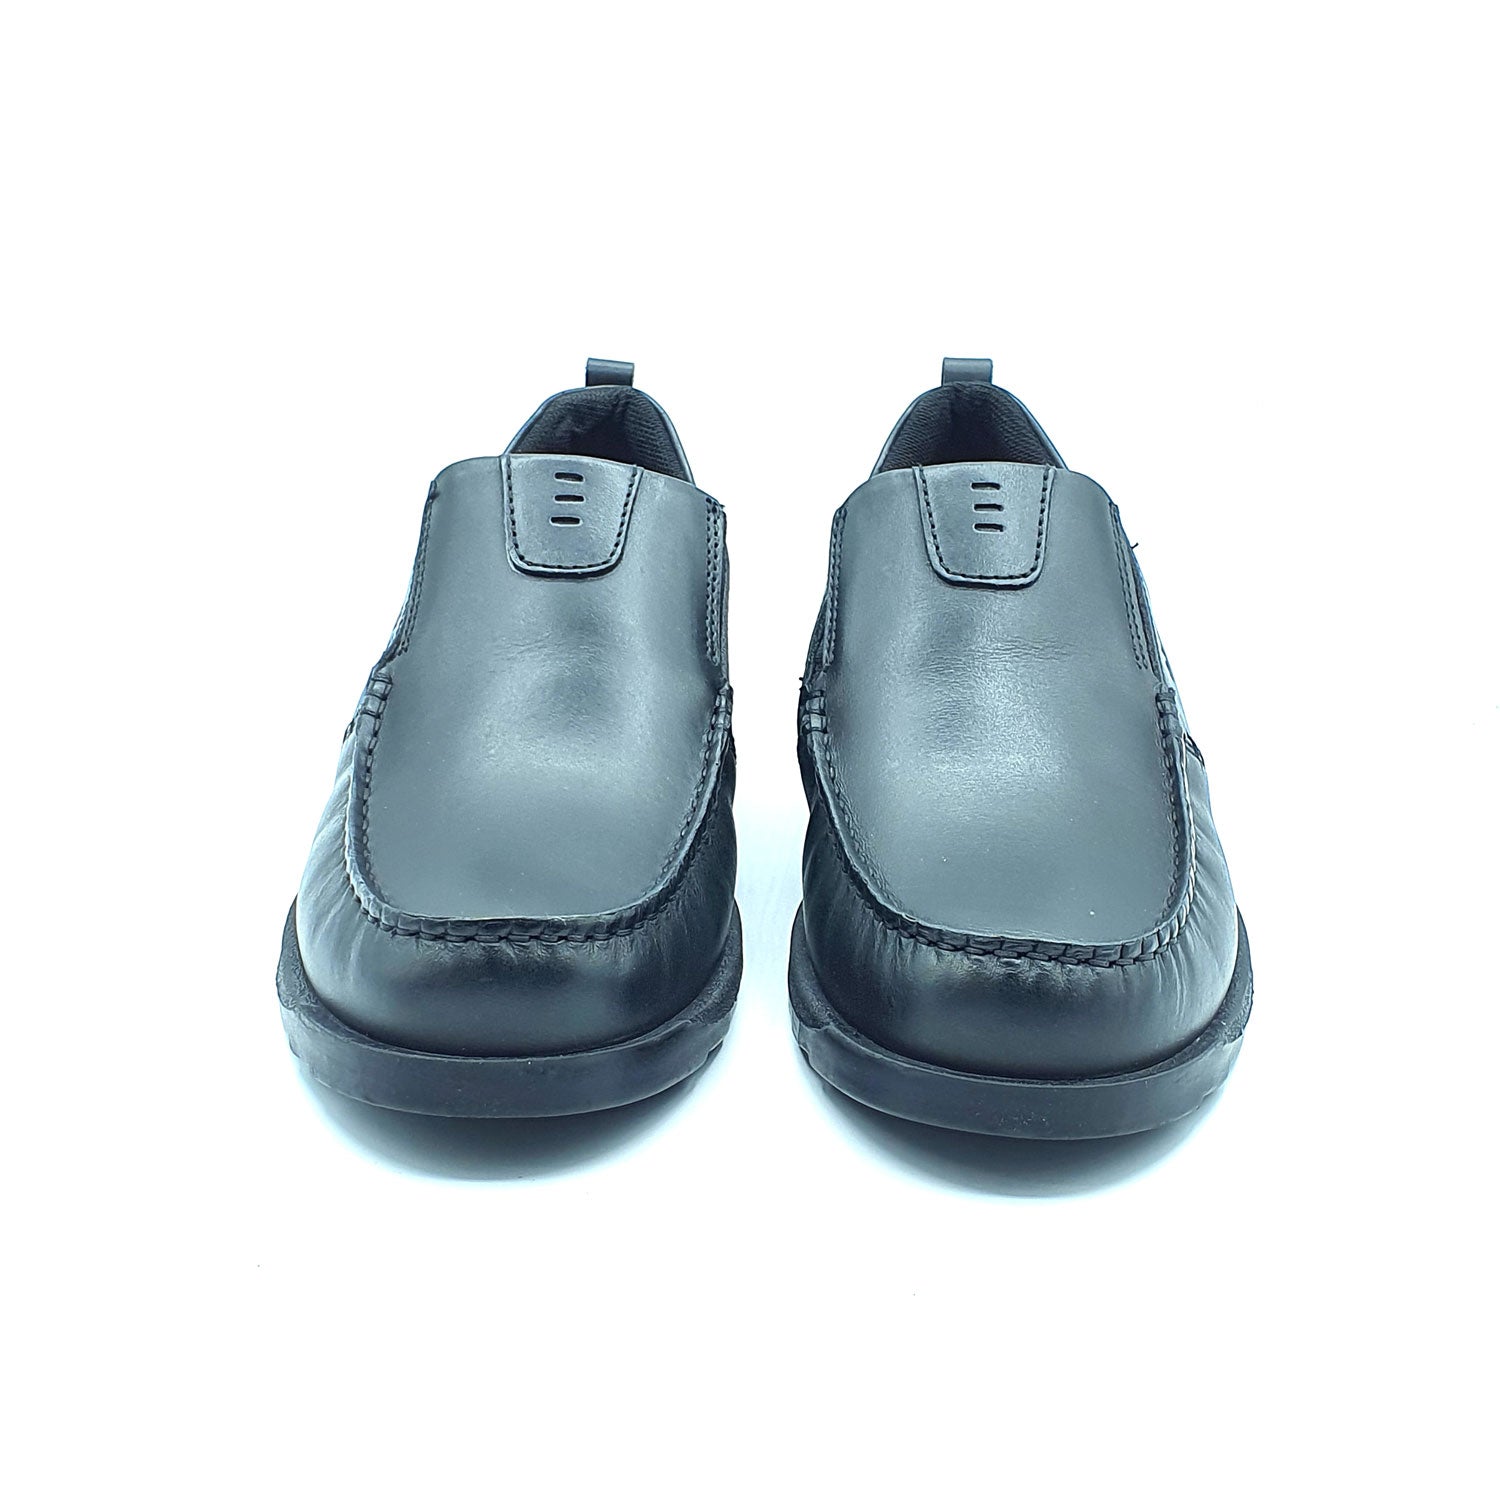 Dubarry Karter Slip On Av8 Shoe - Black 2 Shaws Department Stores